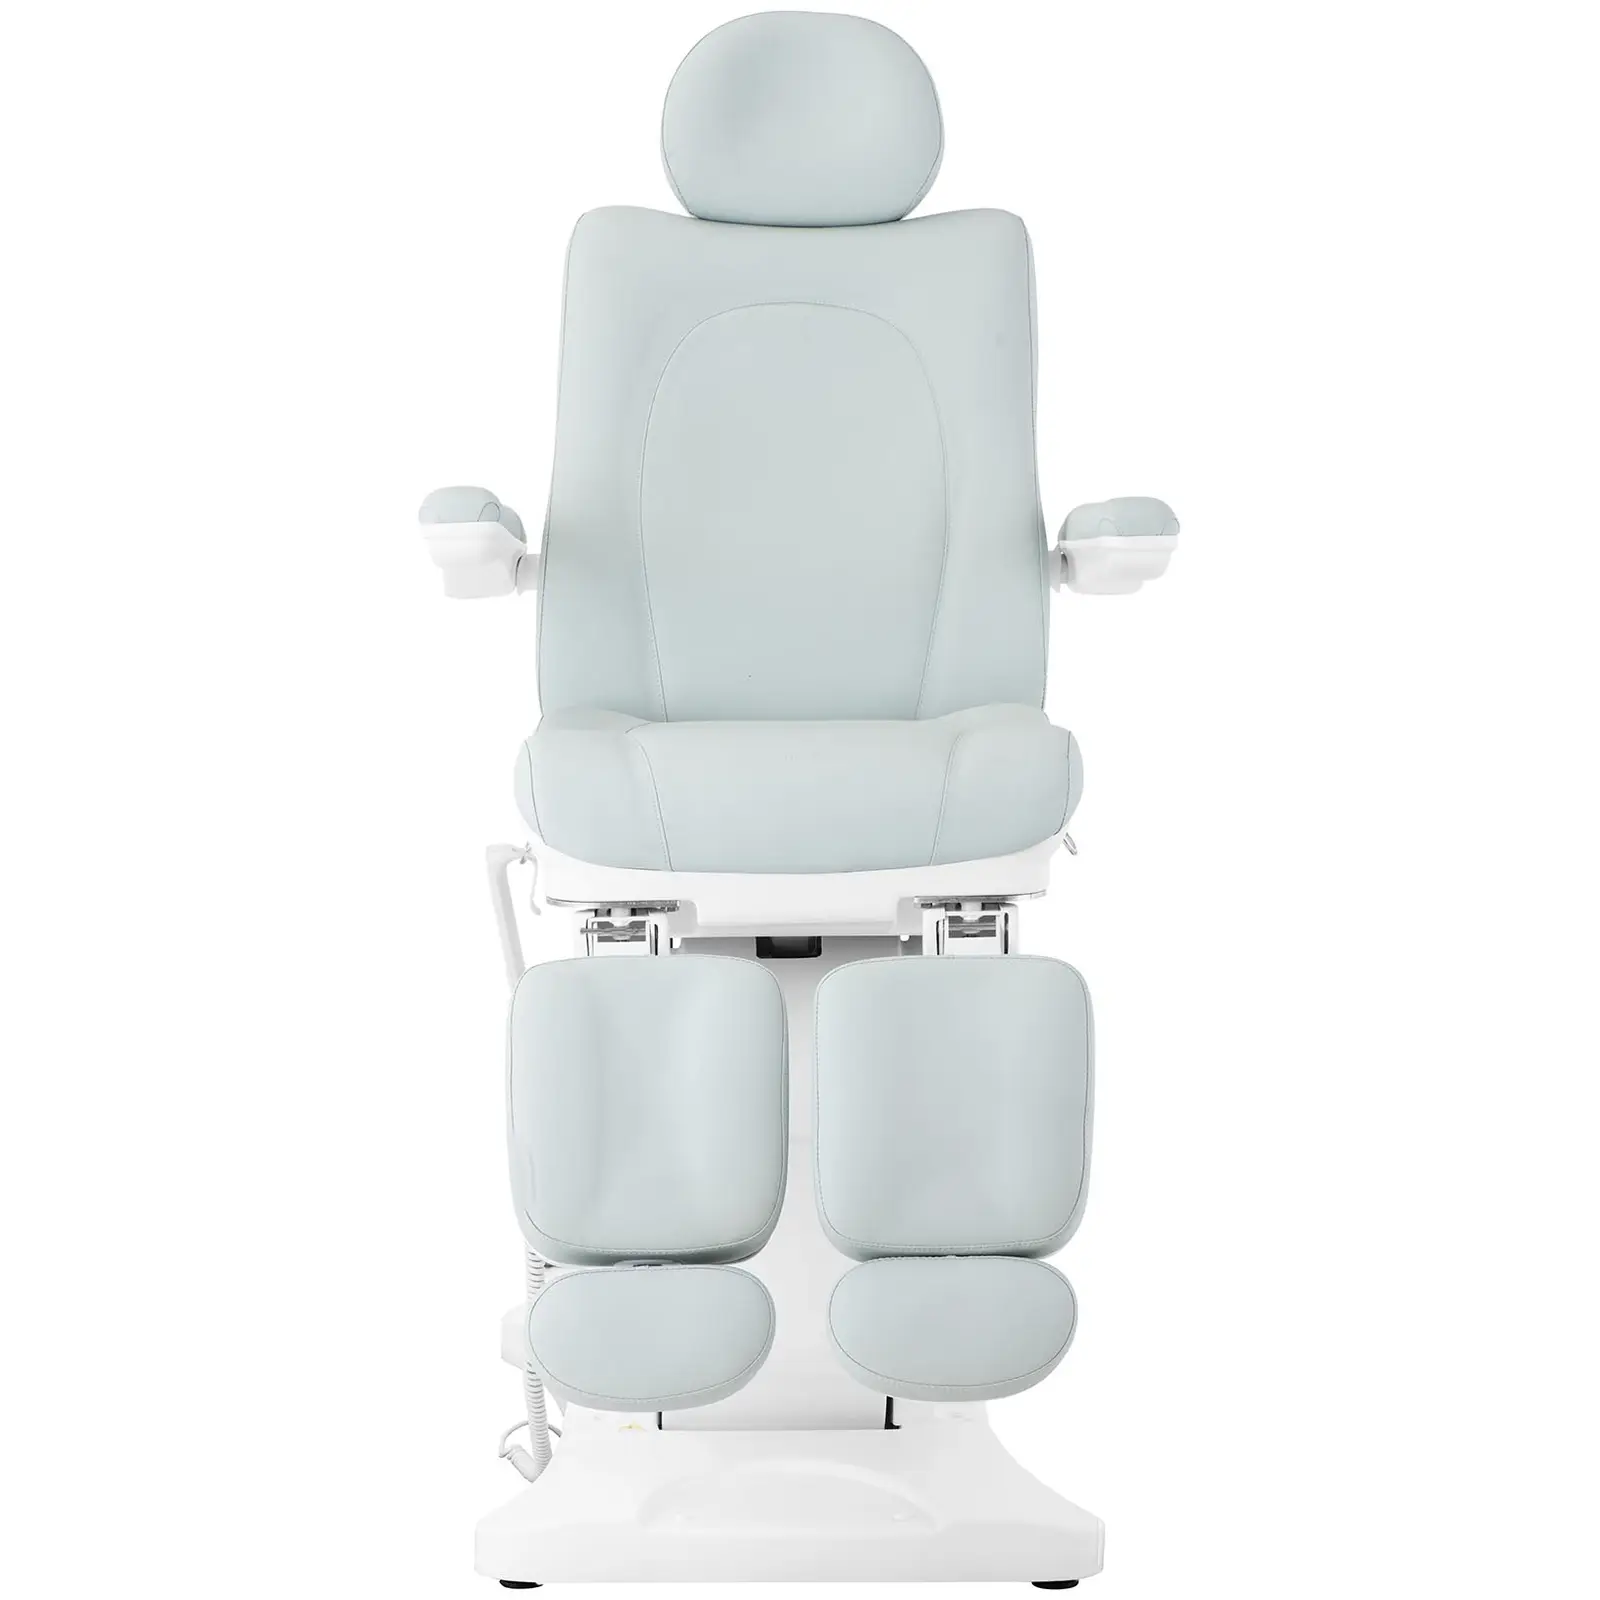 Fotel do pedicure - 300 W - 150 kg - Jasnozielony, Biały